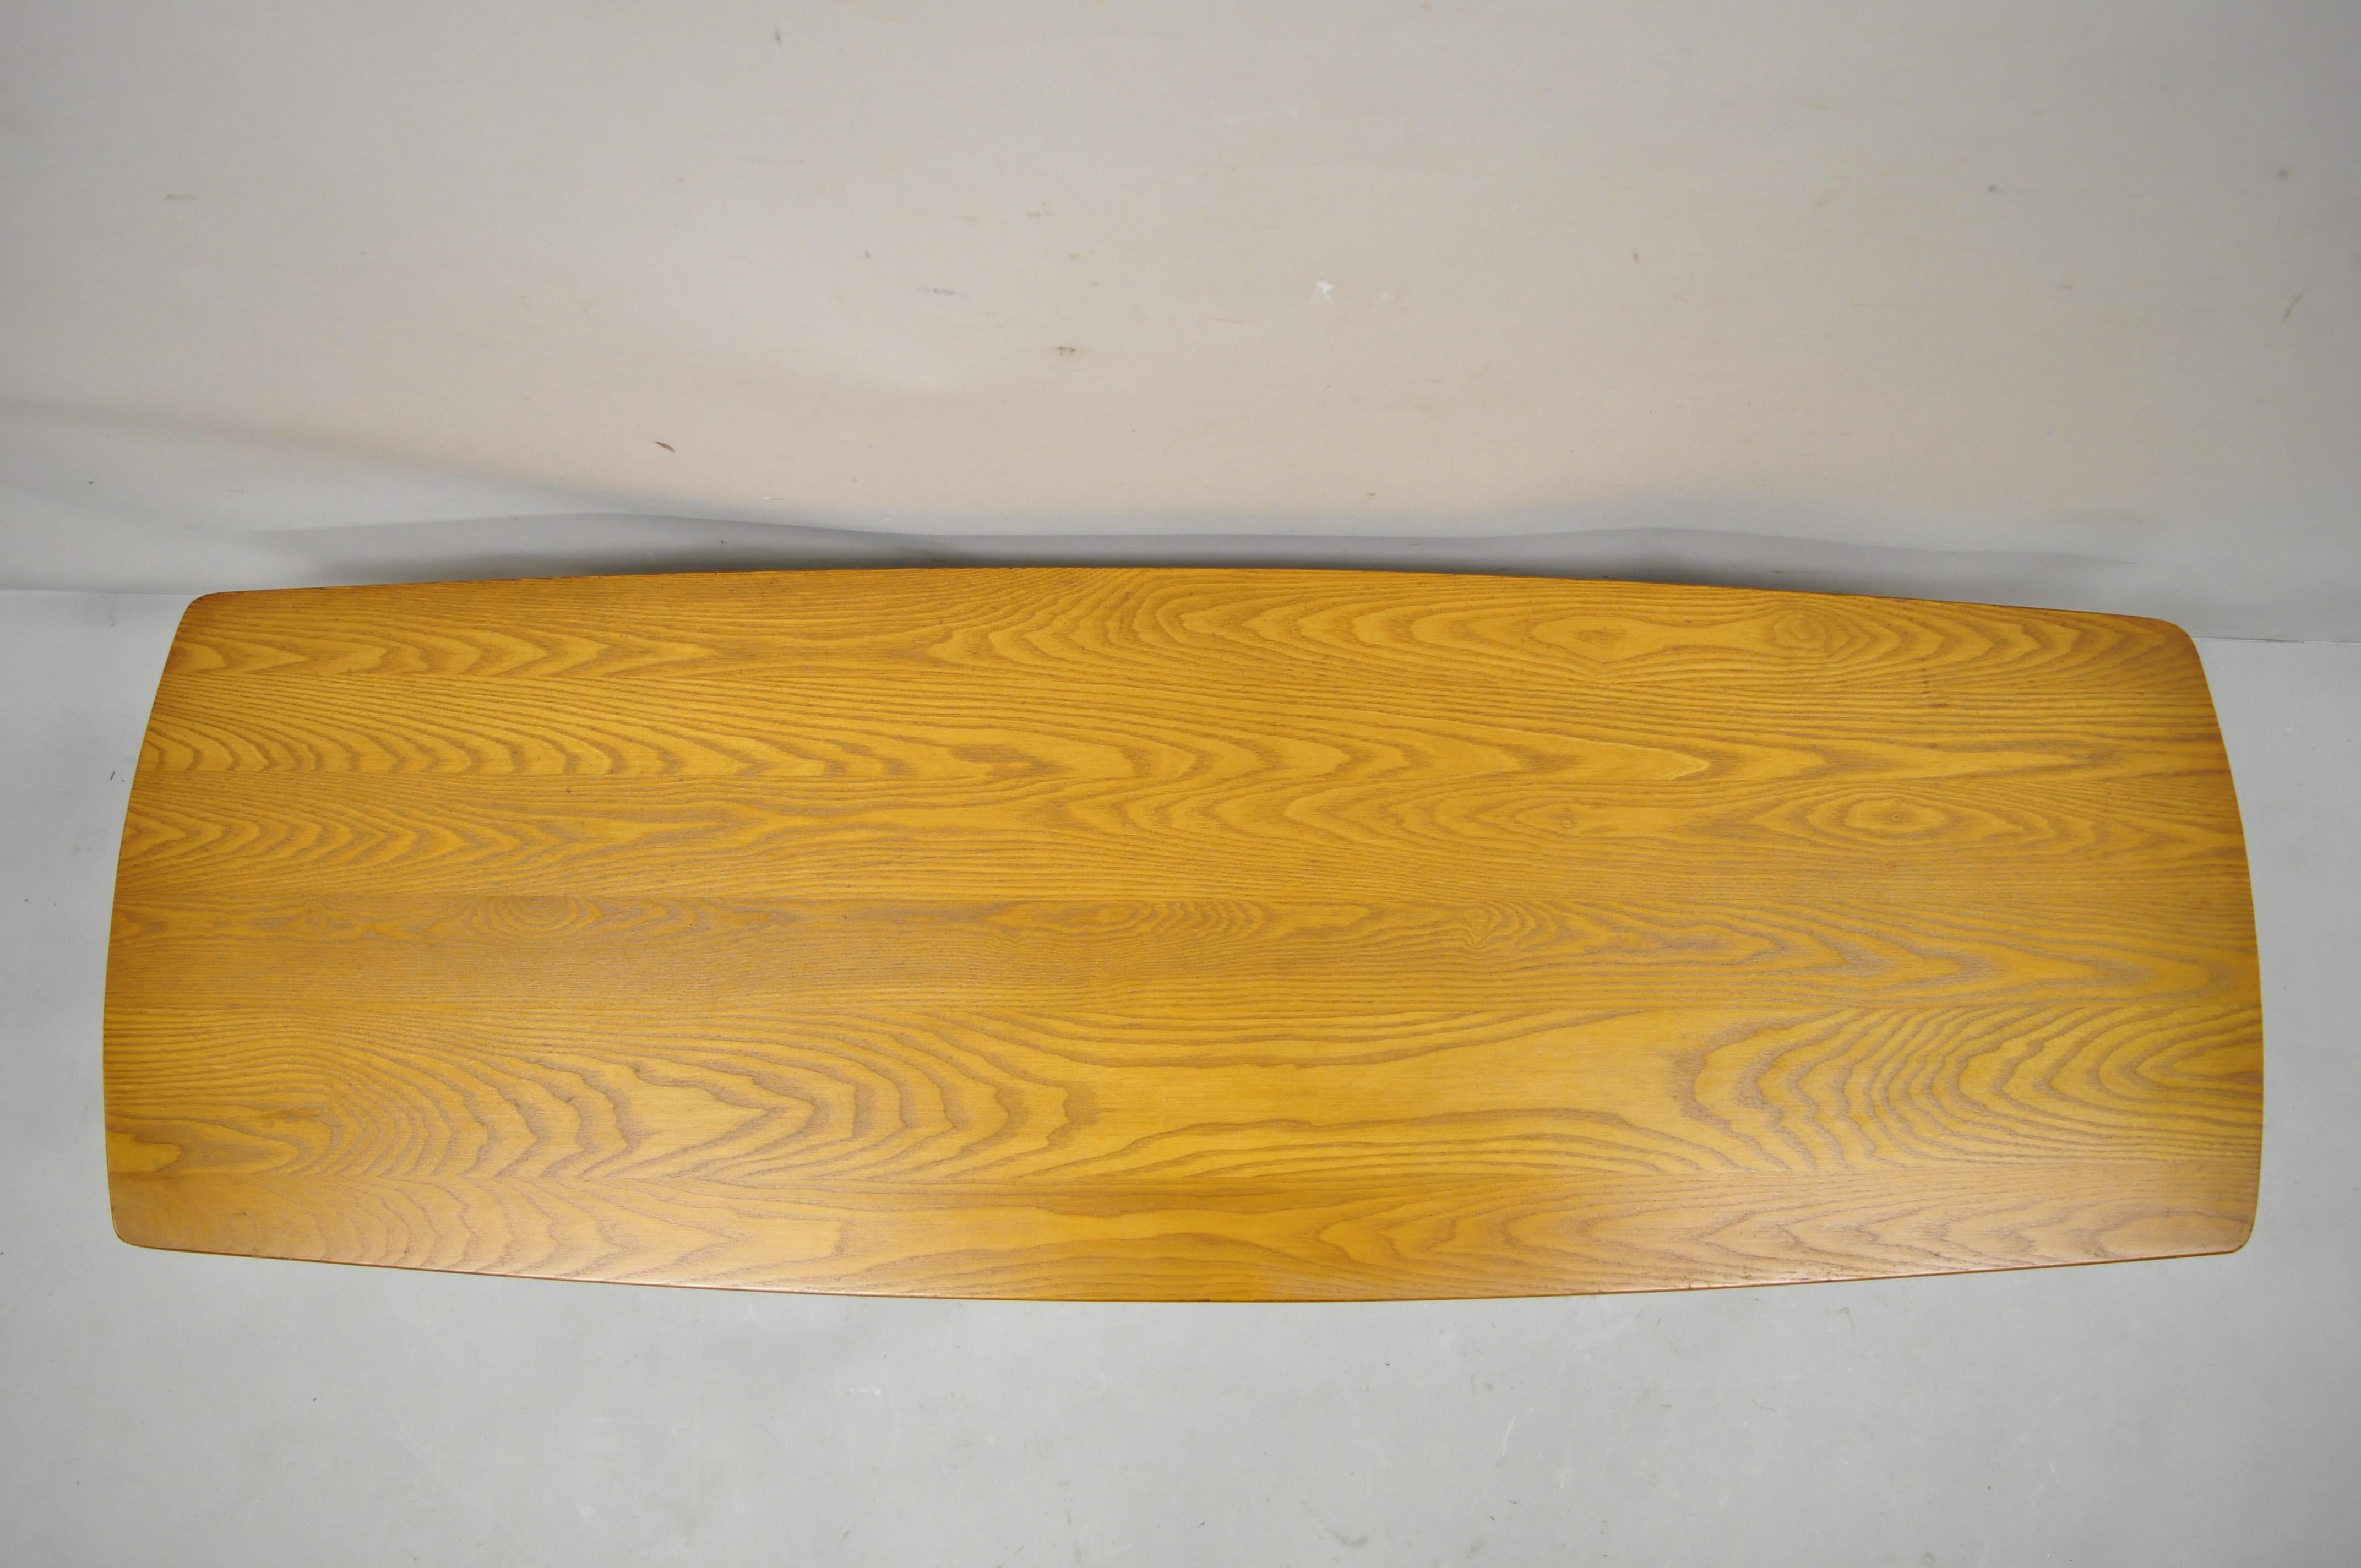 North American Vintage Mid-Century Modern Teak Wood Surfboard Long Coffee Table 701-G